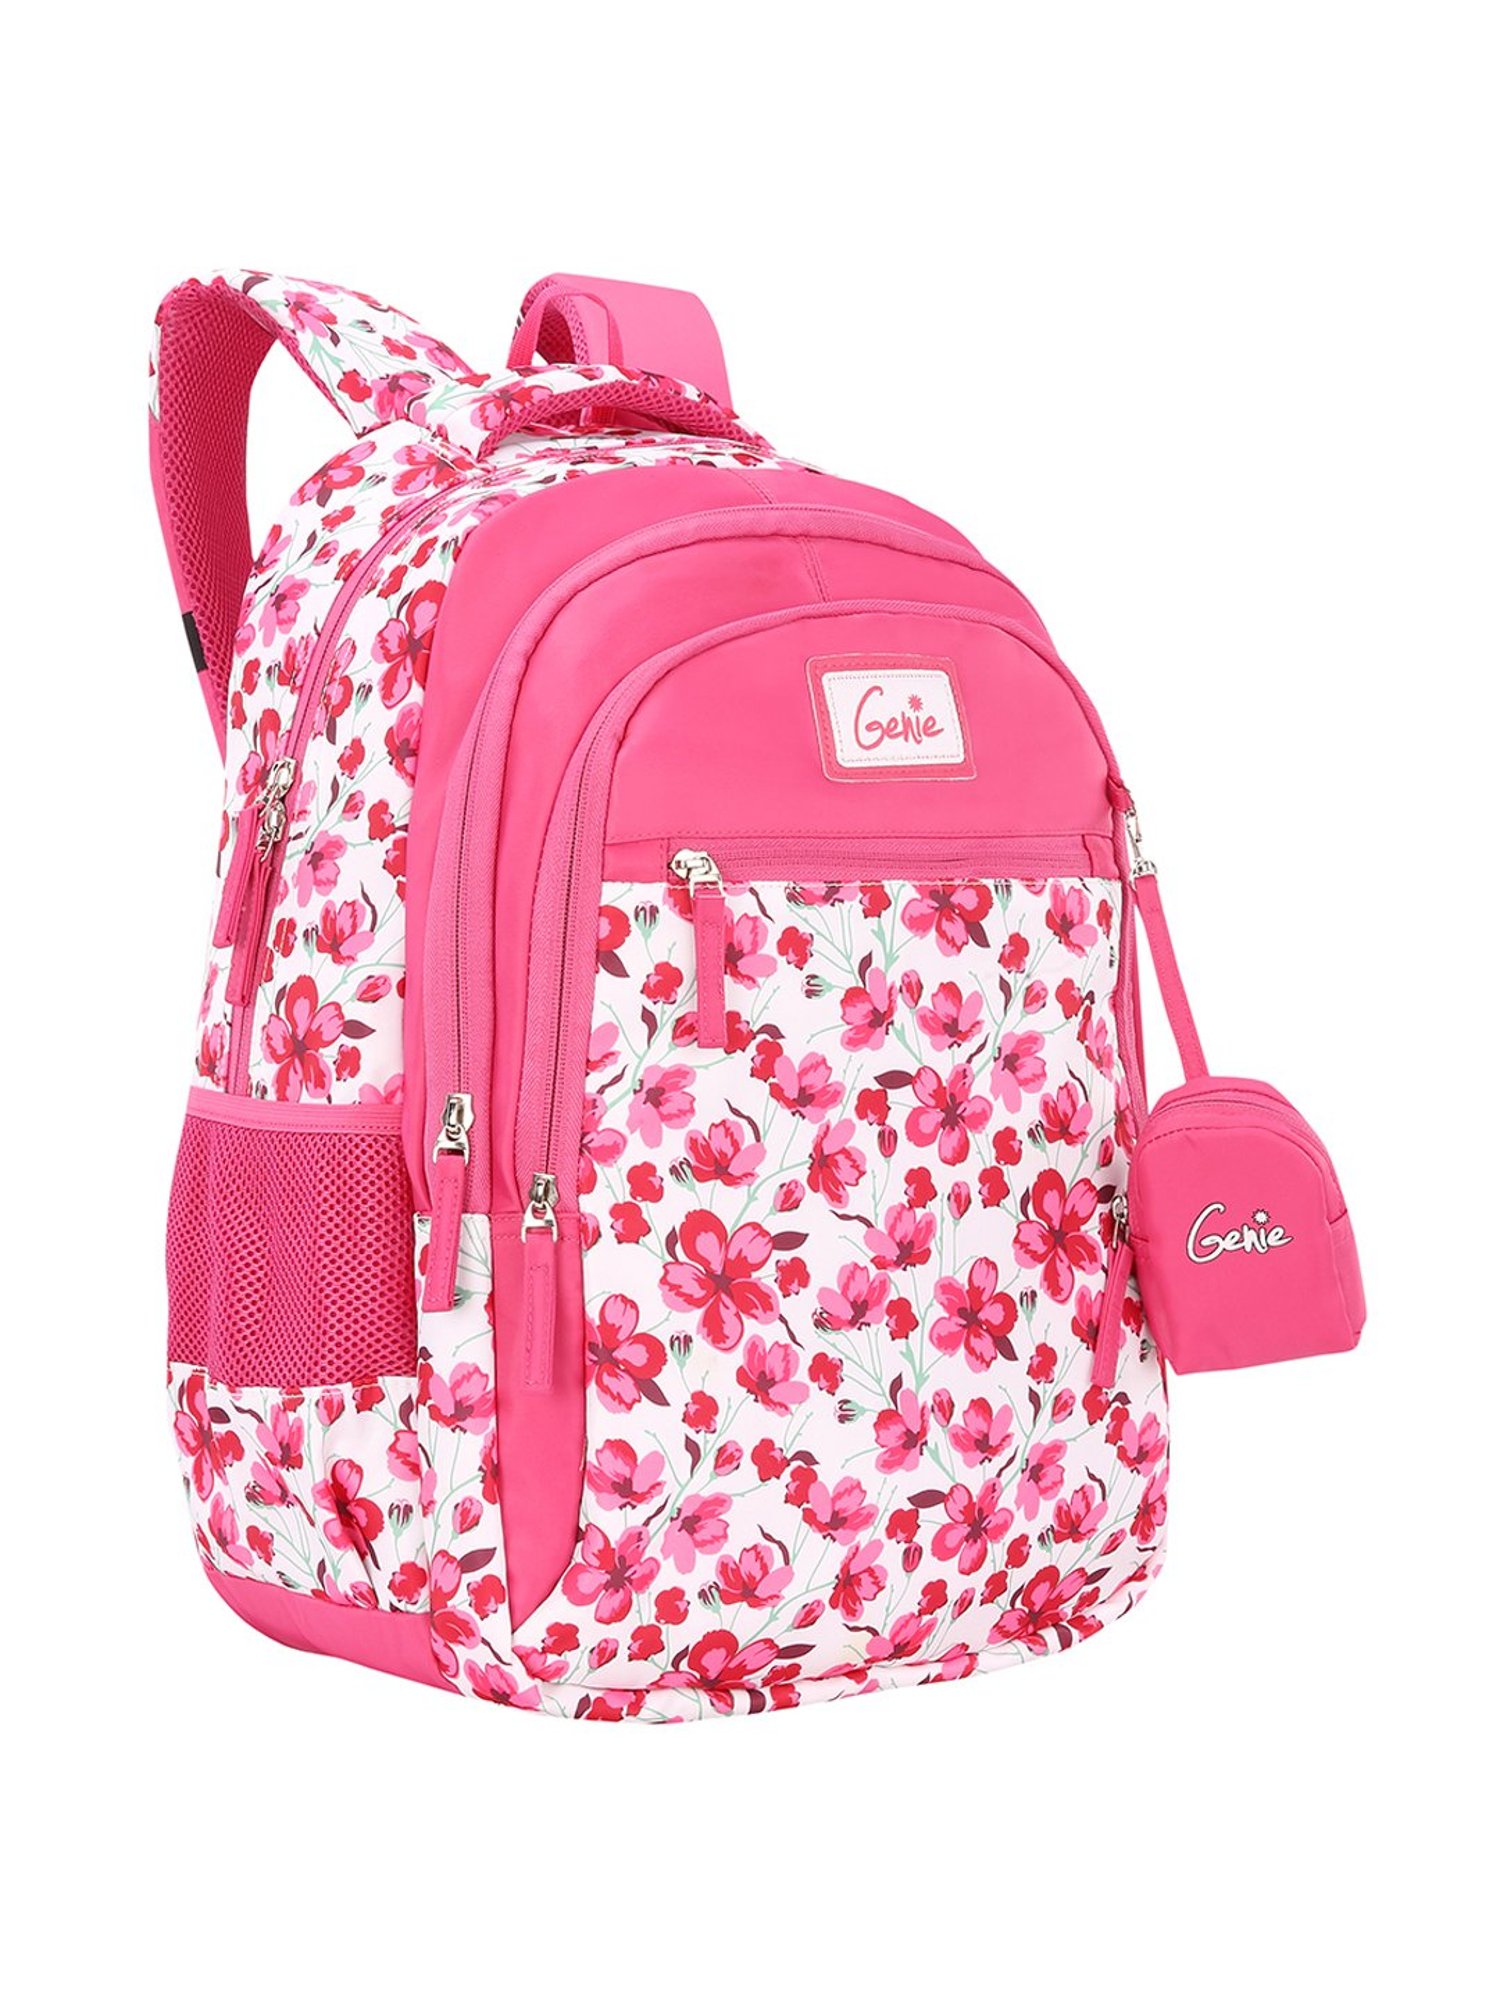 Flipkartcom  PALTANSTORE baby pink school bag cute kids School Bags for  Nursery Kids Age 2 to 5 School Bag  Pink 10 L good bag Backpack   Backpack